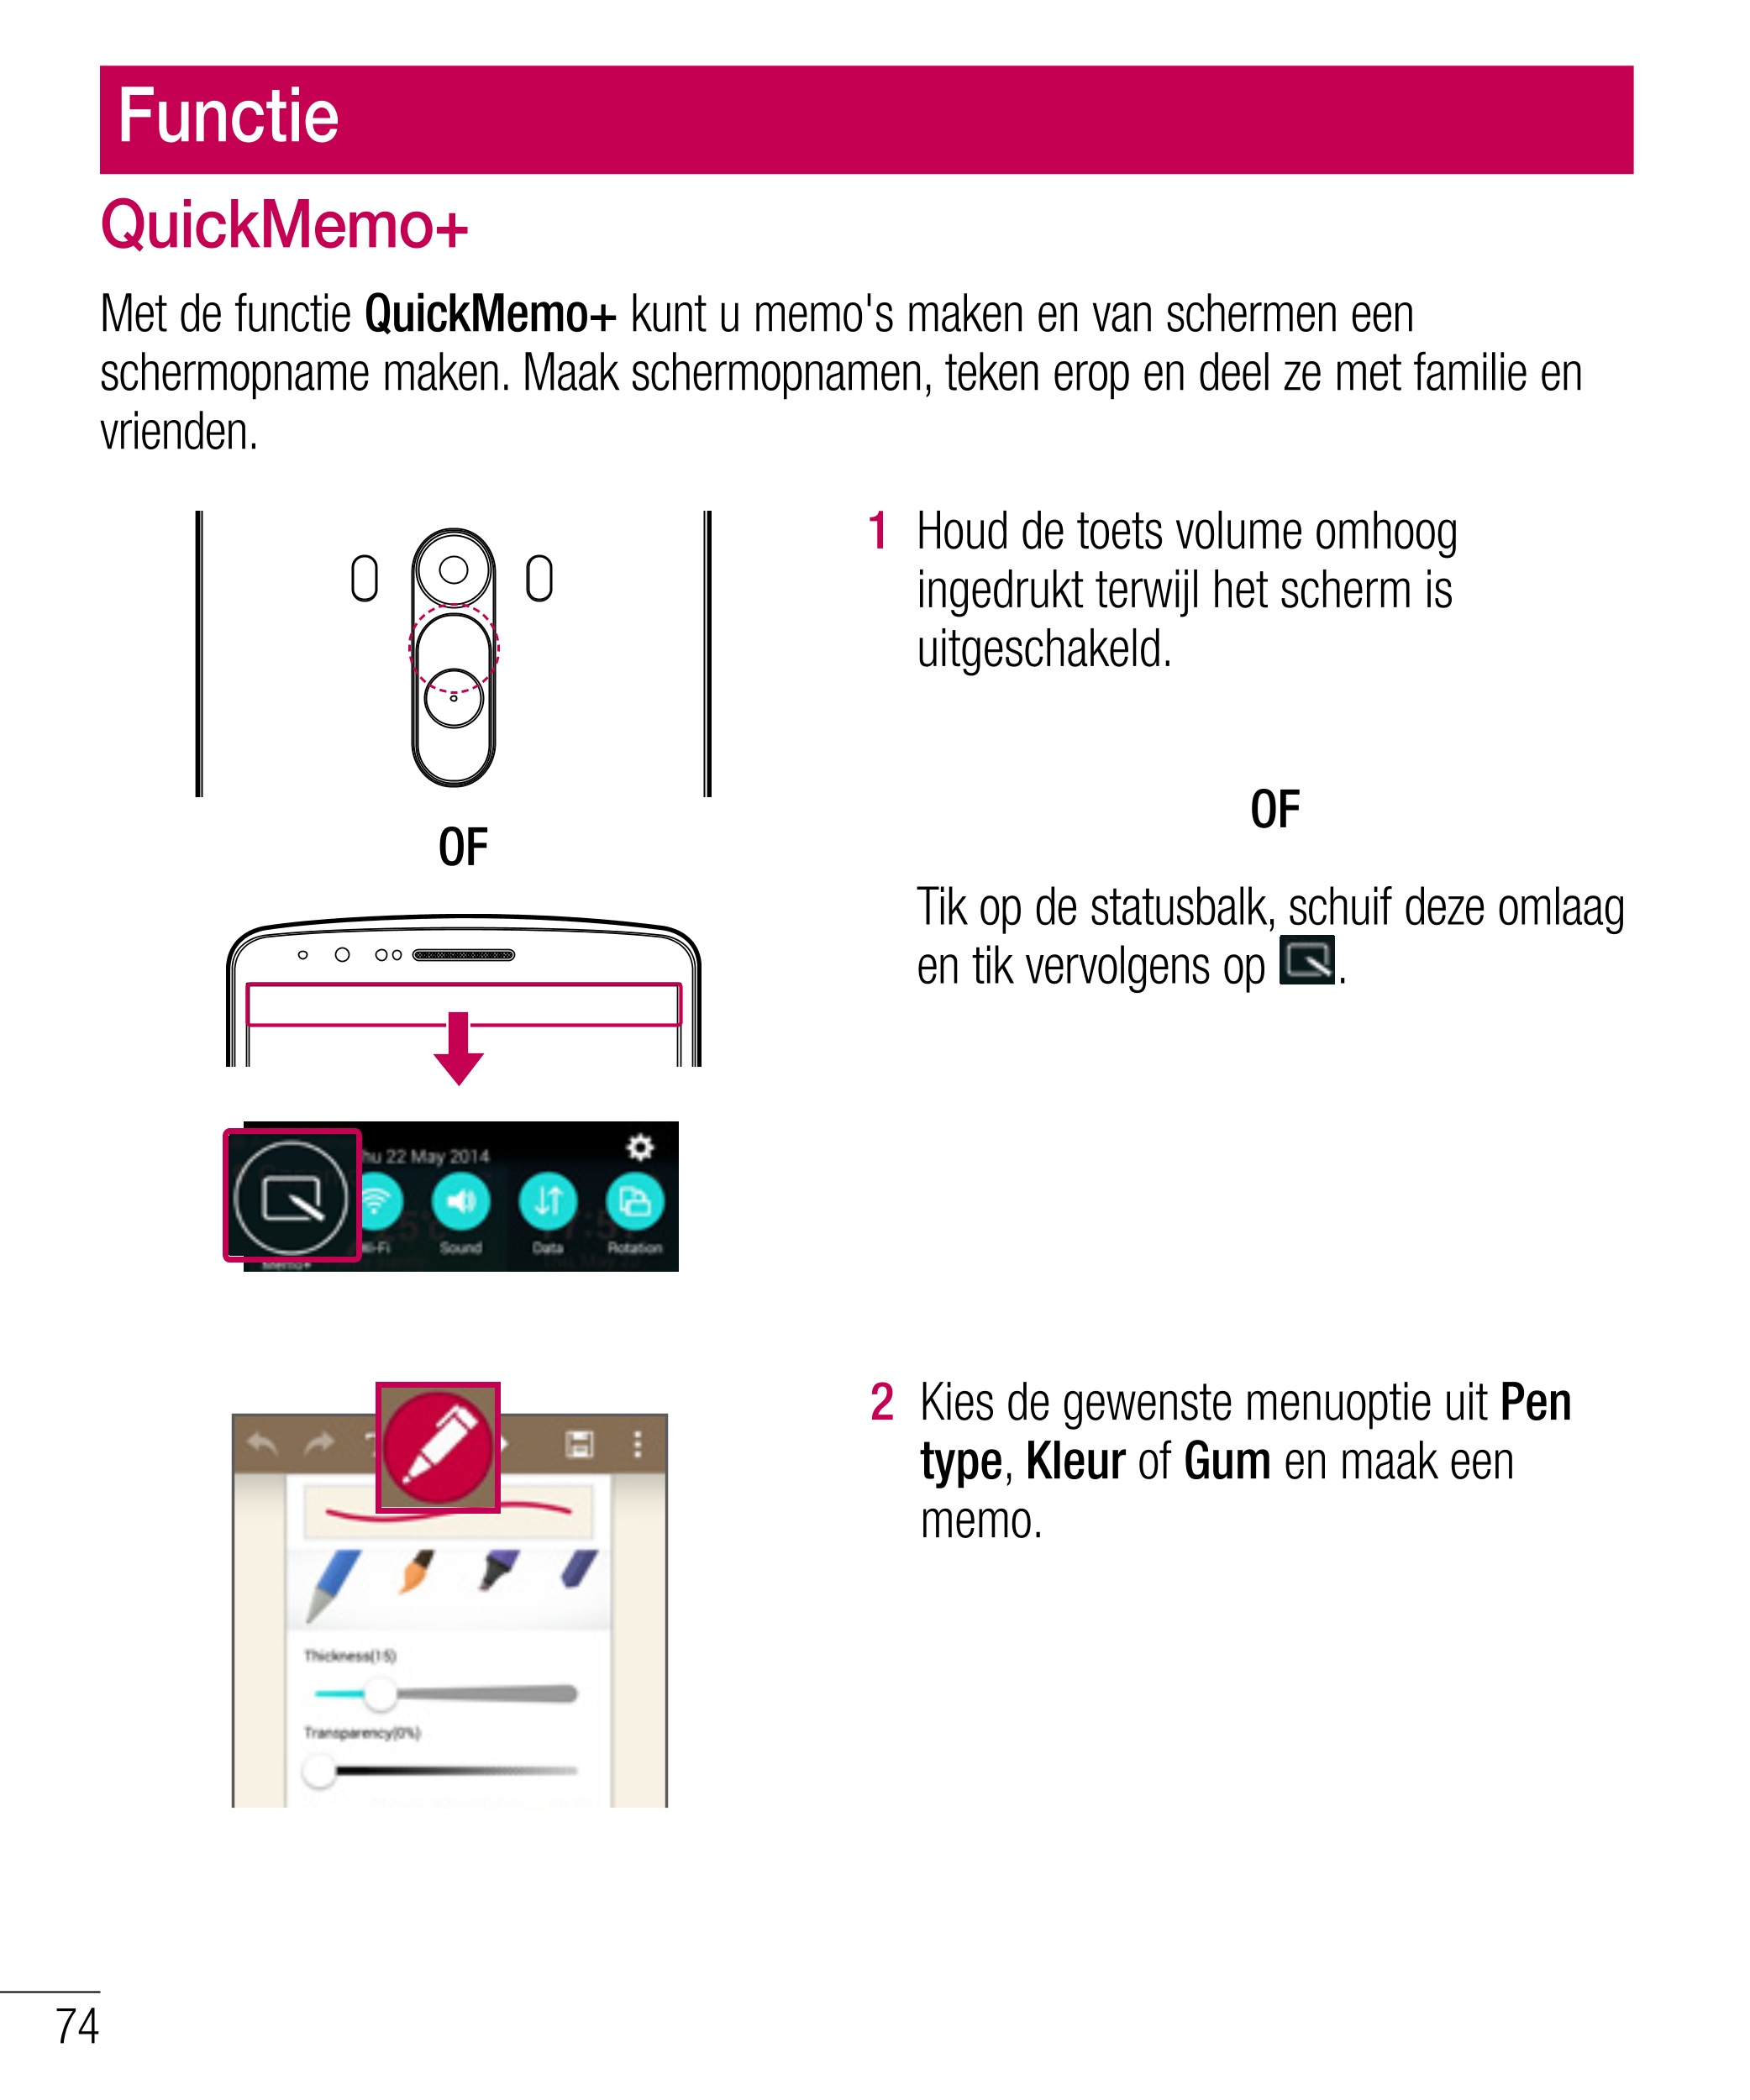 Functie
QuickMemo+
Met de functie  QuickMemo+ kunt u memo's maken en van schermen een 
schermopname maken. Maak schermopnamen, t